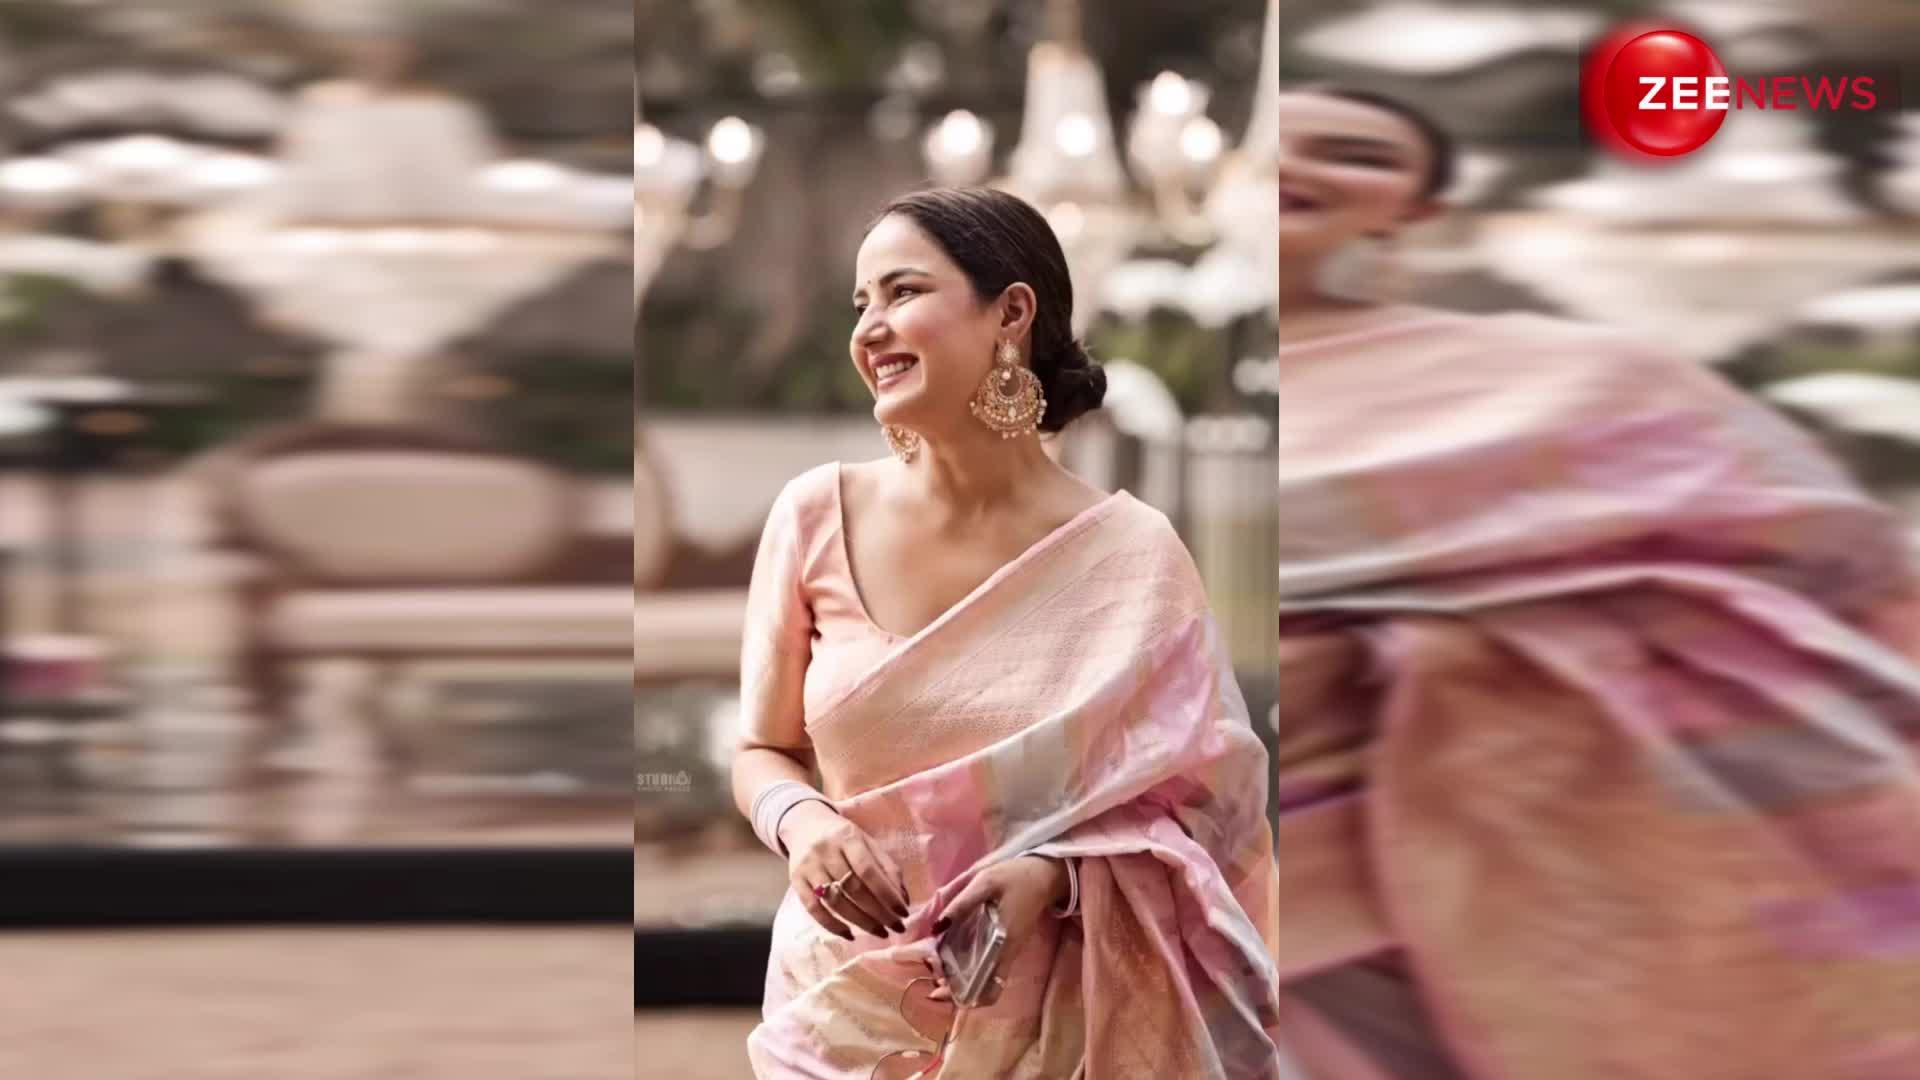 सिंपल साड़ी पहन बेहद सादगी भरे अंदाज में खूबसूरत नजर आई टीवी की ये हसीना